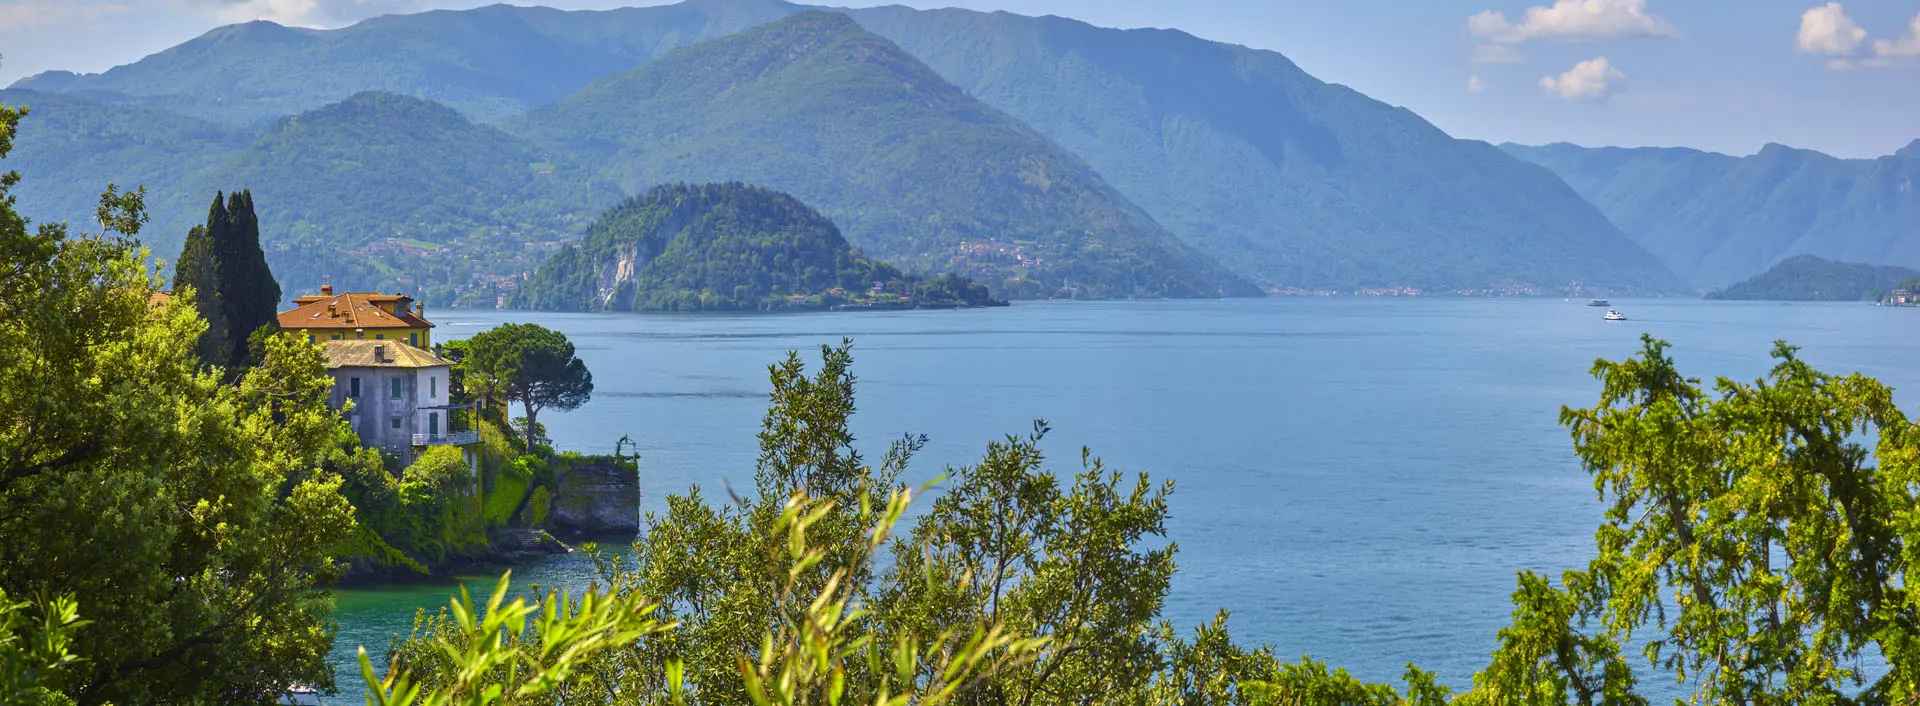 Ristrutturazioni e realizzazioni sul lago di Como.